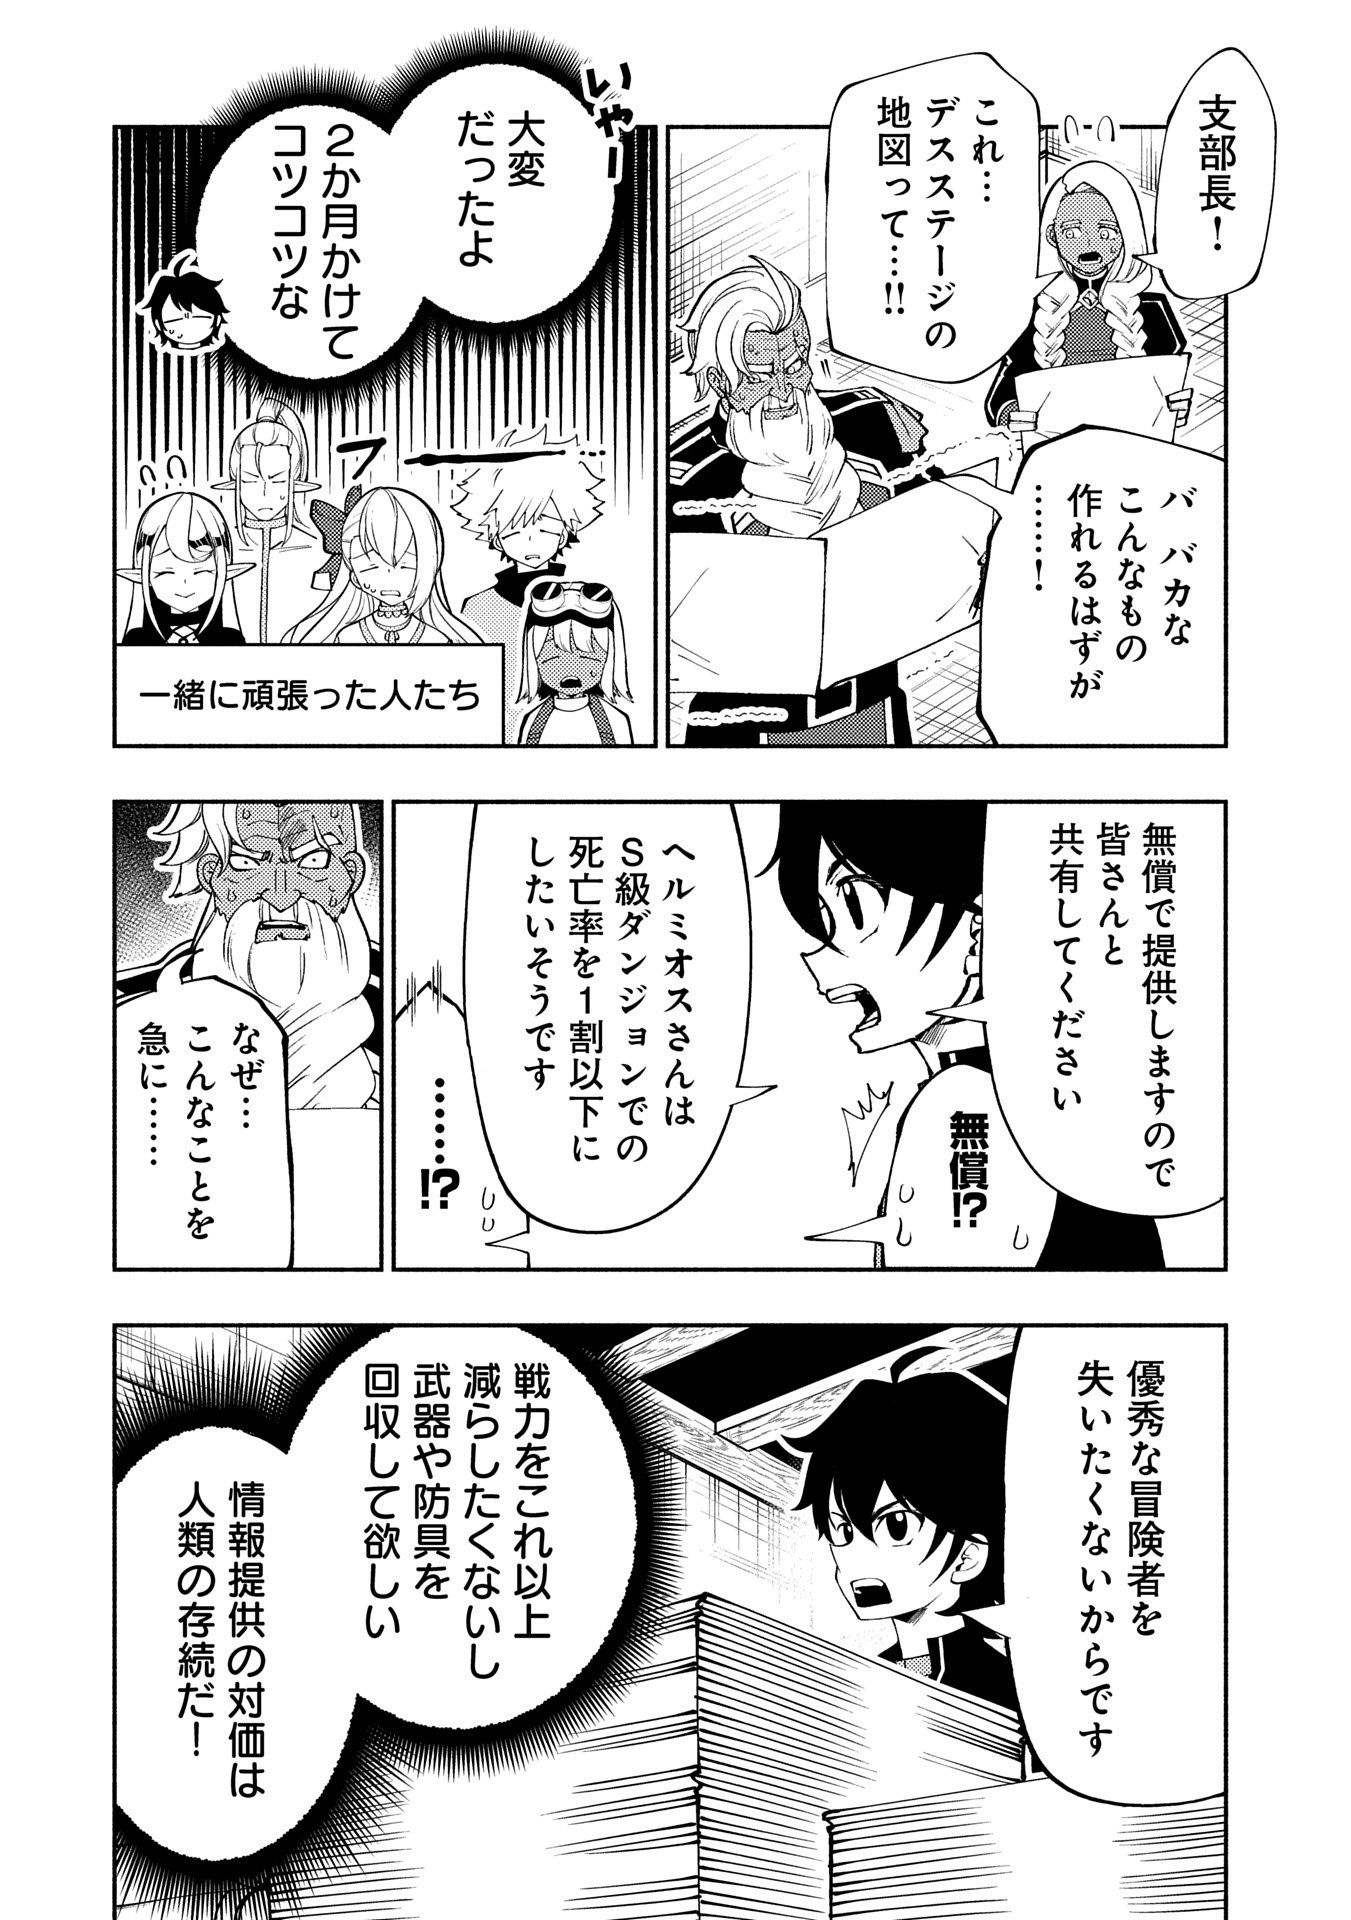 Hell Mode: Yarikomi Suki no Gamer wa Hai Settei no Isekai de Musou Suru - Chapter 65 - Page 4